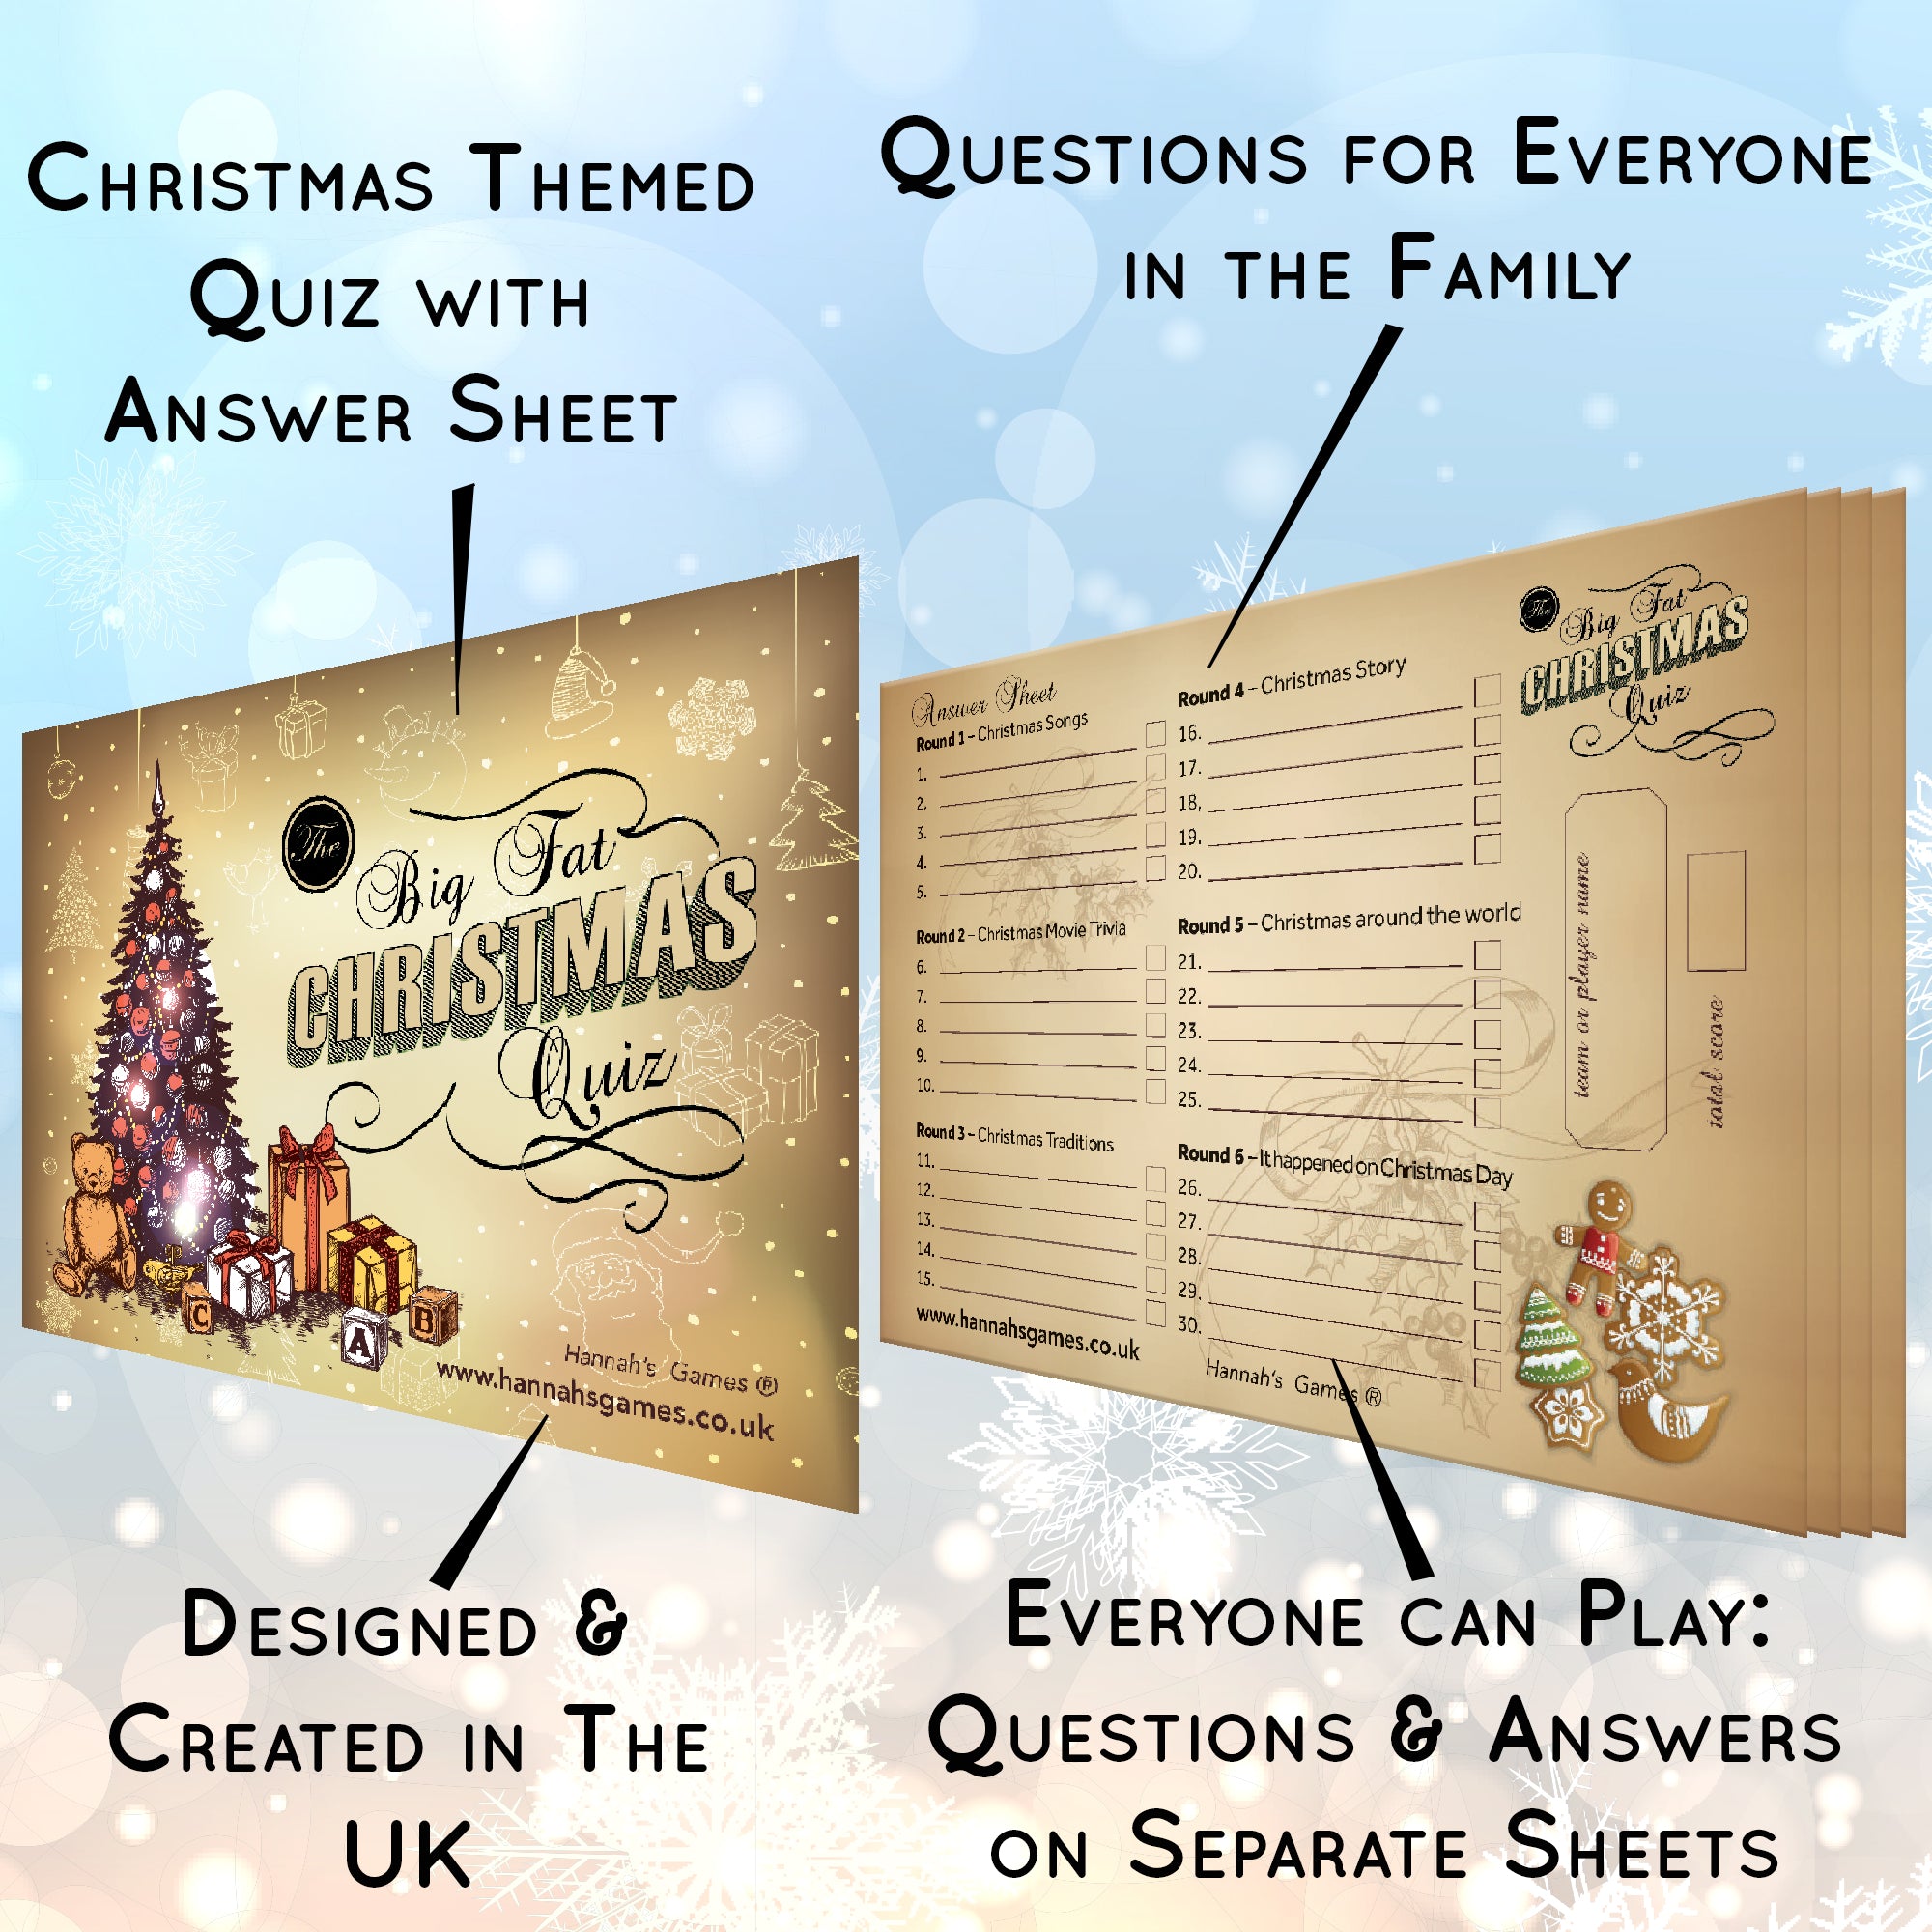 Christmas Trivia Game Pub Quiz Style Christmas Games From Hannah S Games Hannah S Games